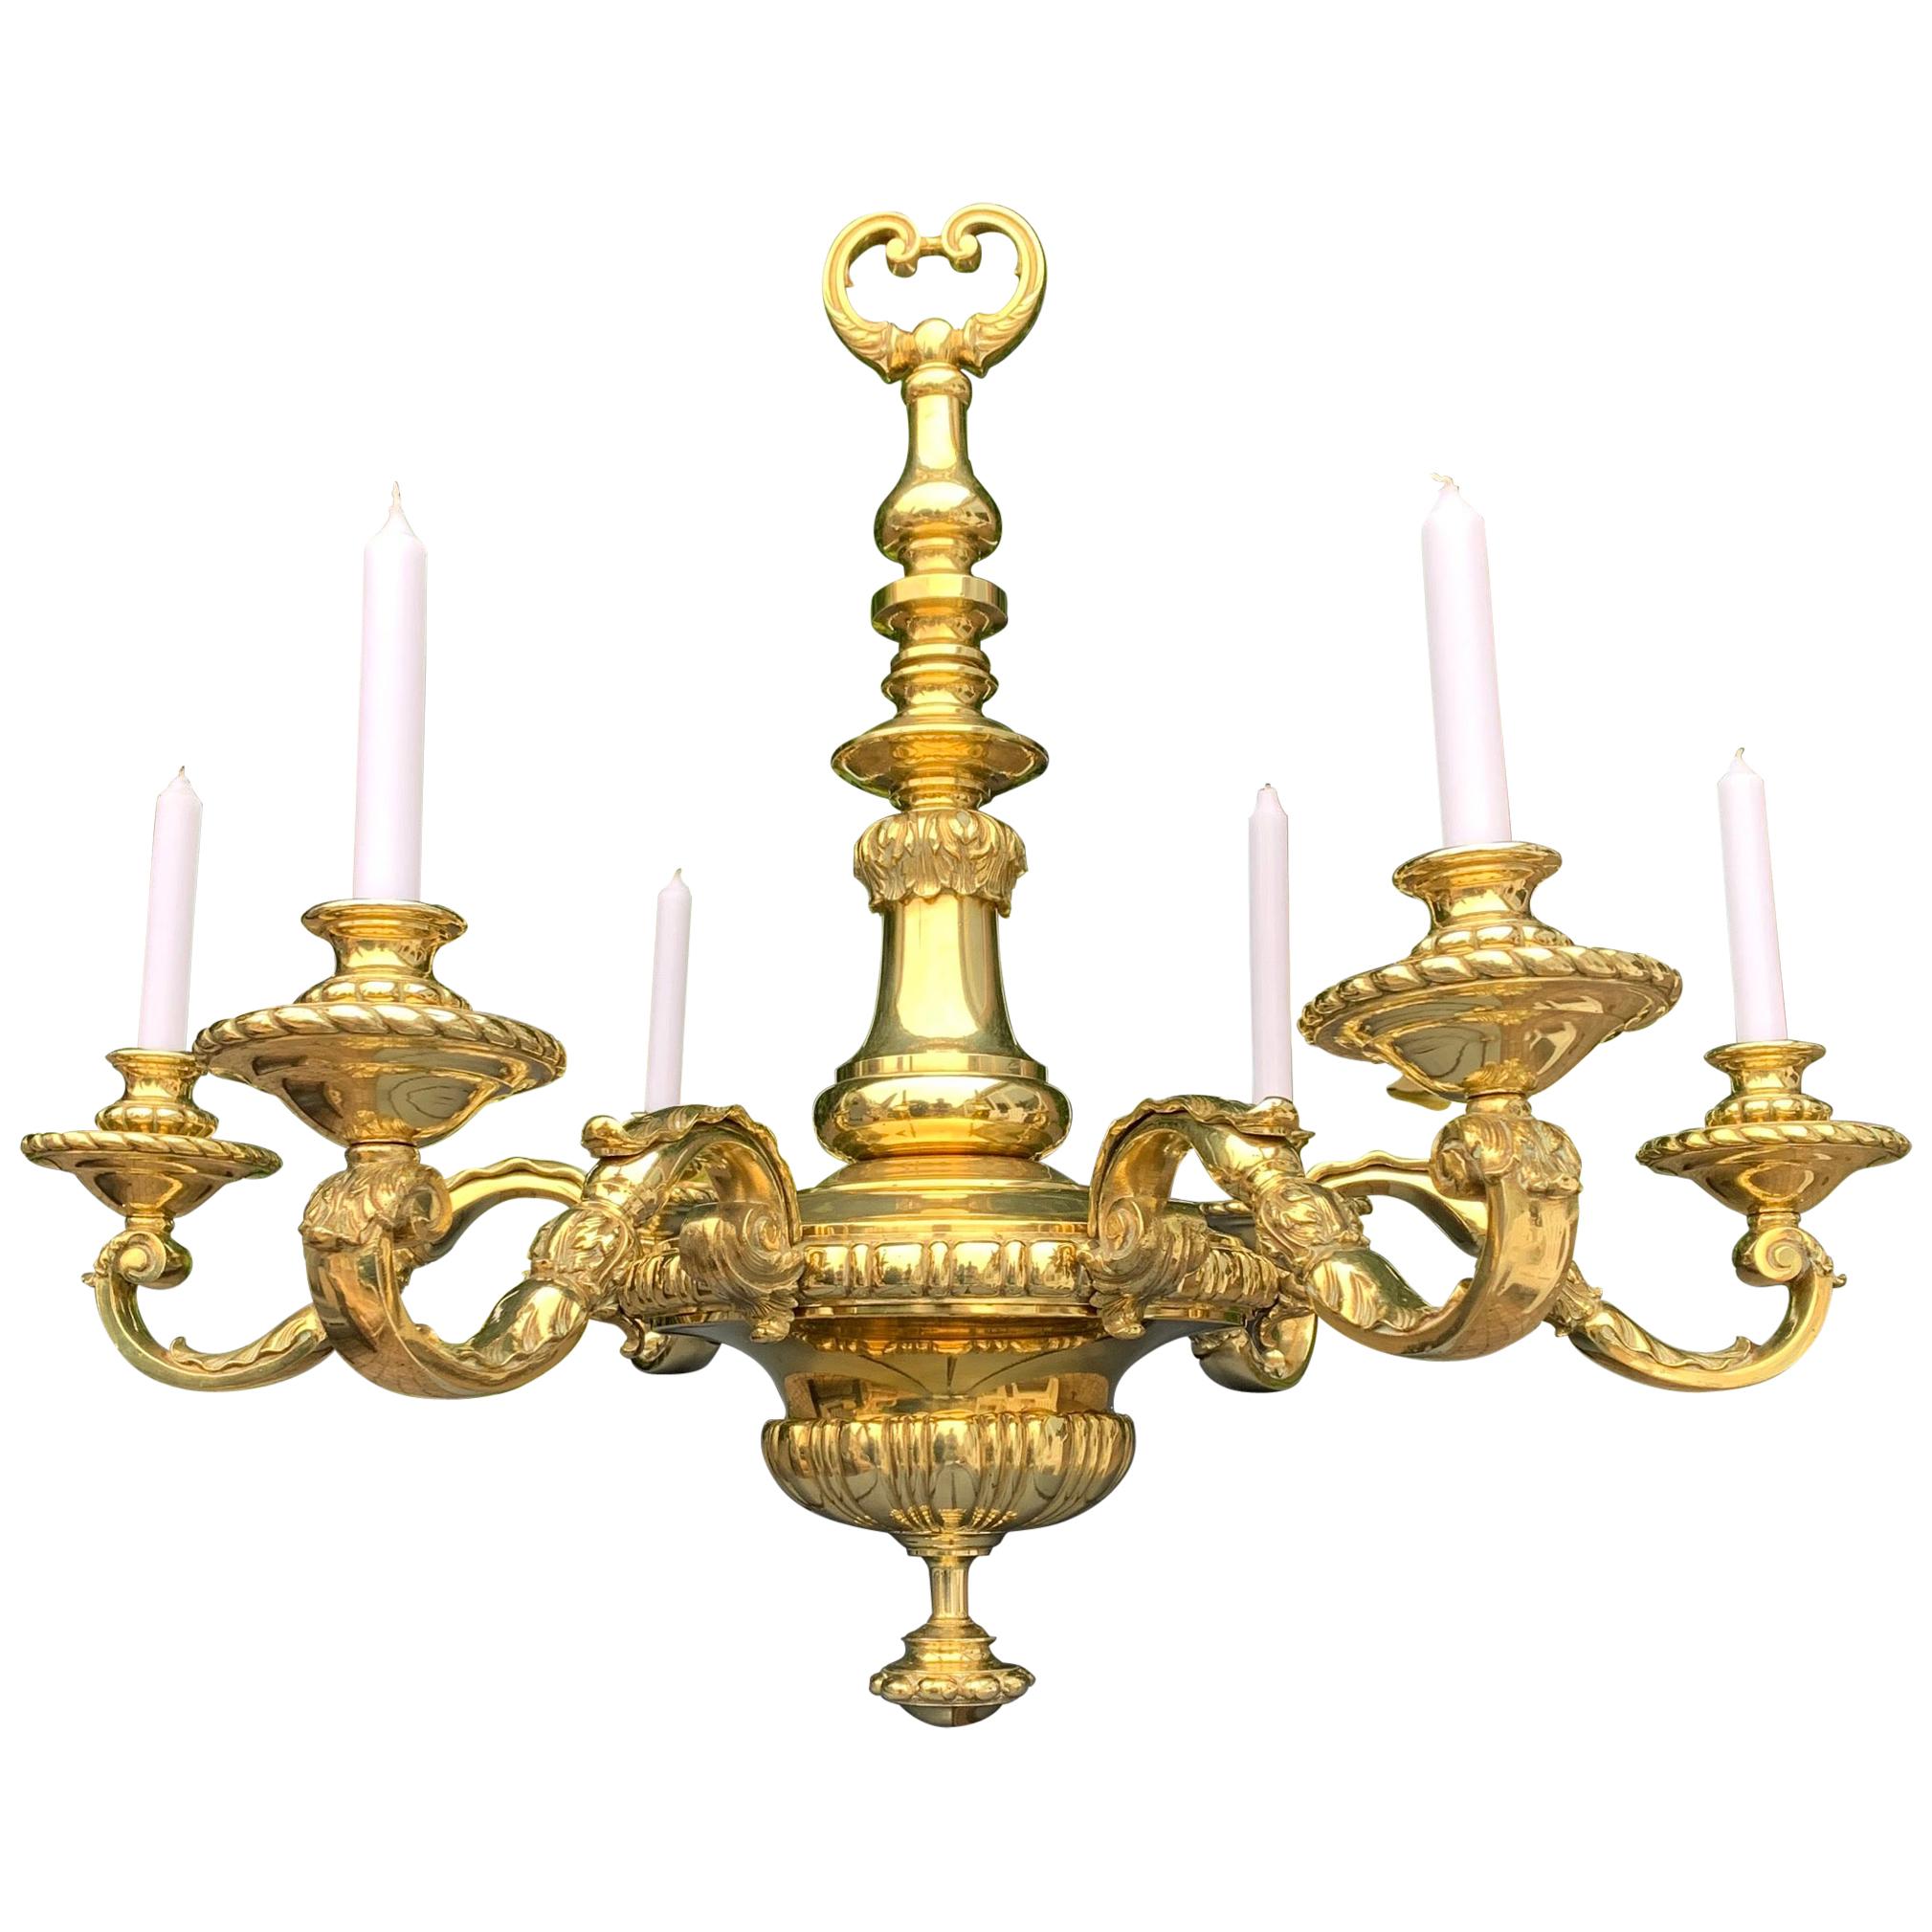 Große antike neoklassizistische 6armige Kerzenleuchter oder elektrischer Kronleuchter aus Gold und Bronze